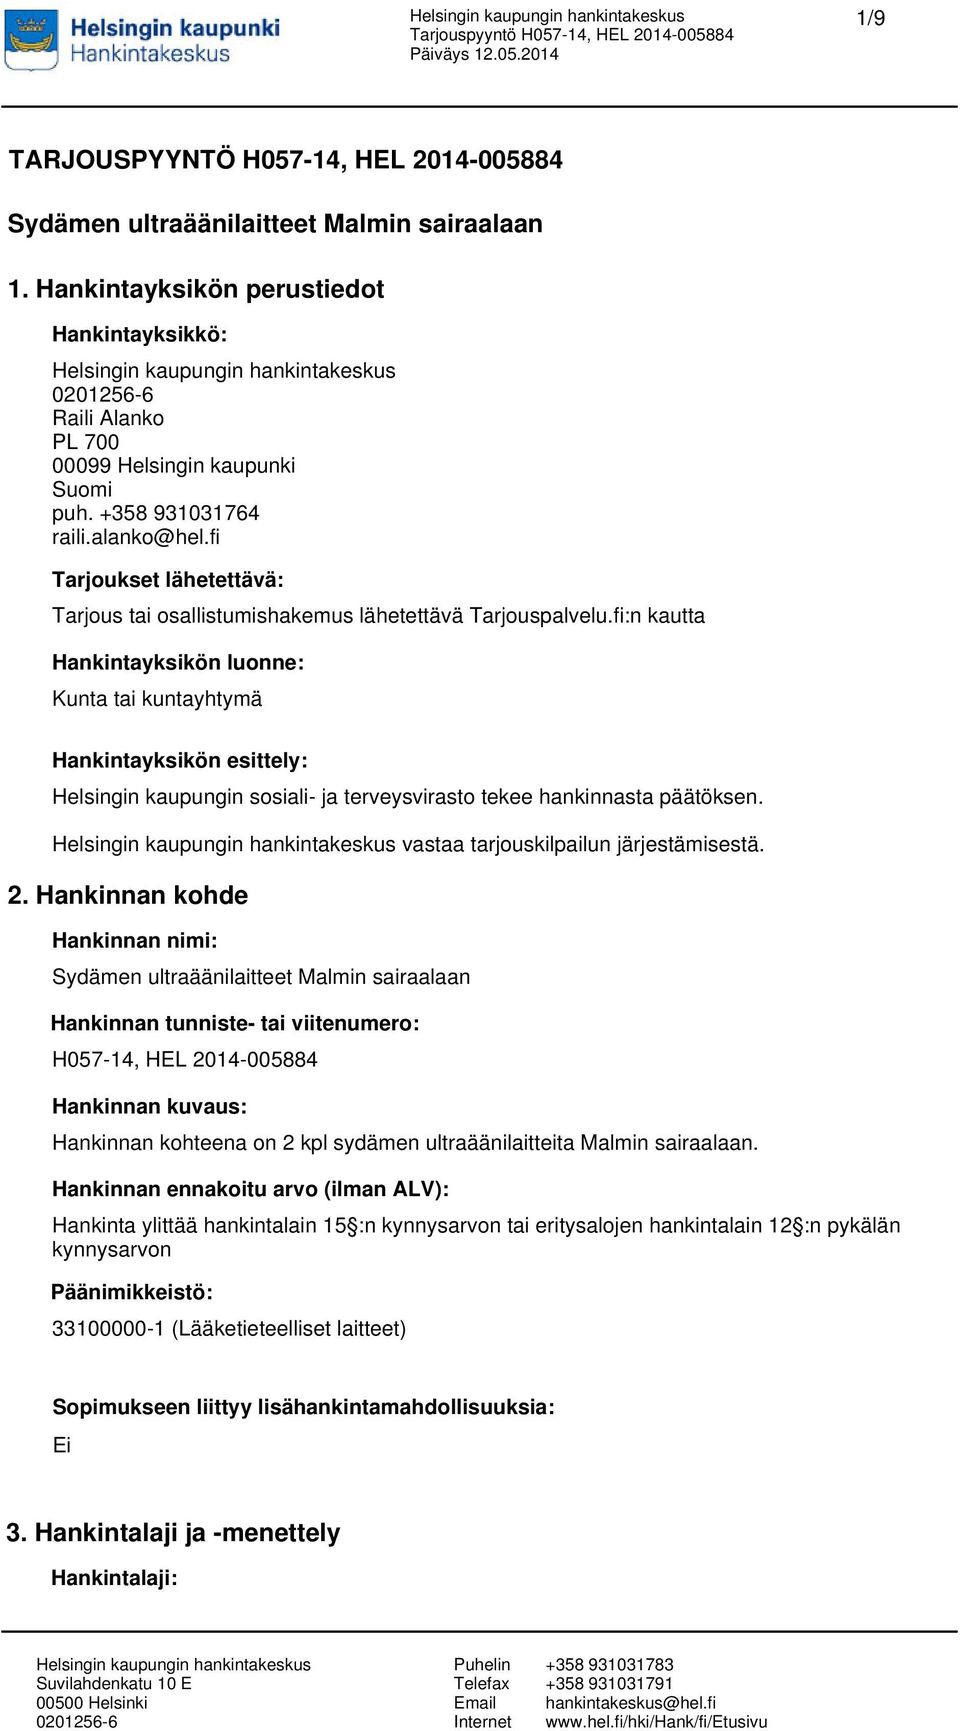 fi:n kautta Hankintayksikön luonne: Kunta tai kuntayhtymä Hankintayksikön esittely: Helsingin kaupungin sosiali- ja terveysvirasto tekee hankinnasta päätöksen. vastaa tarjouskilpailun järjestämisestä.